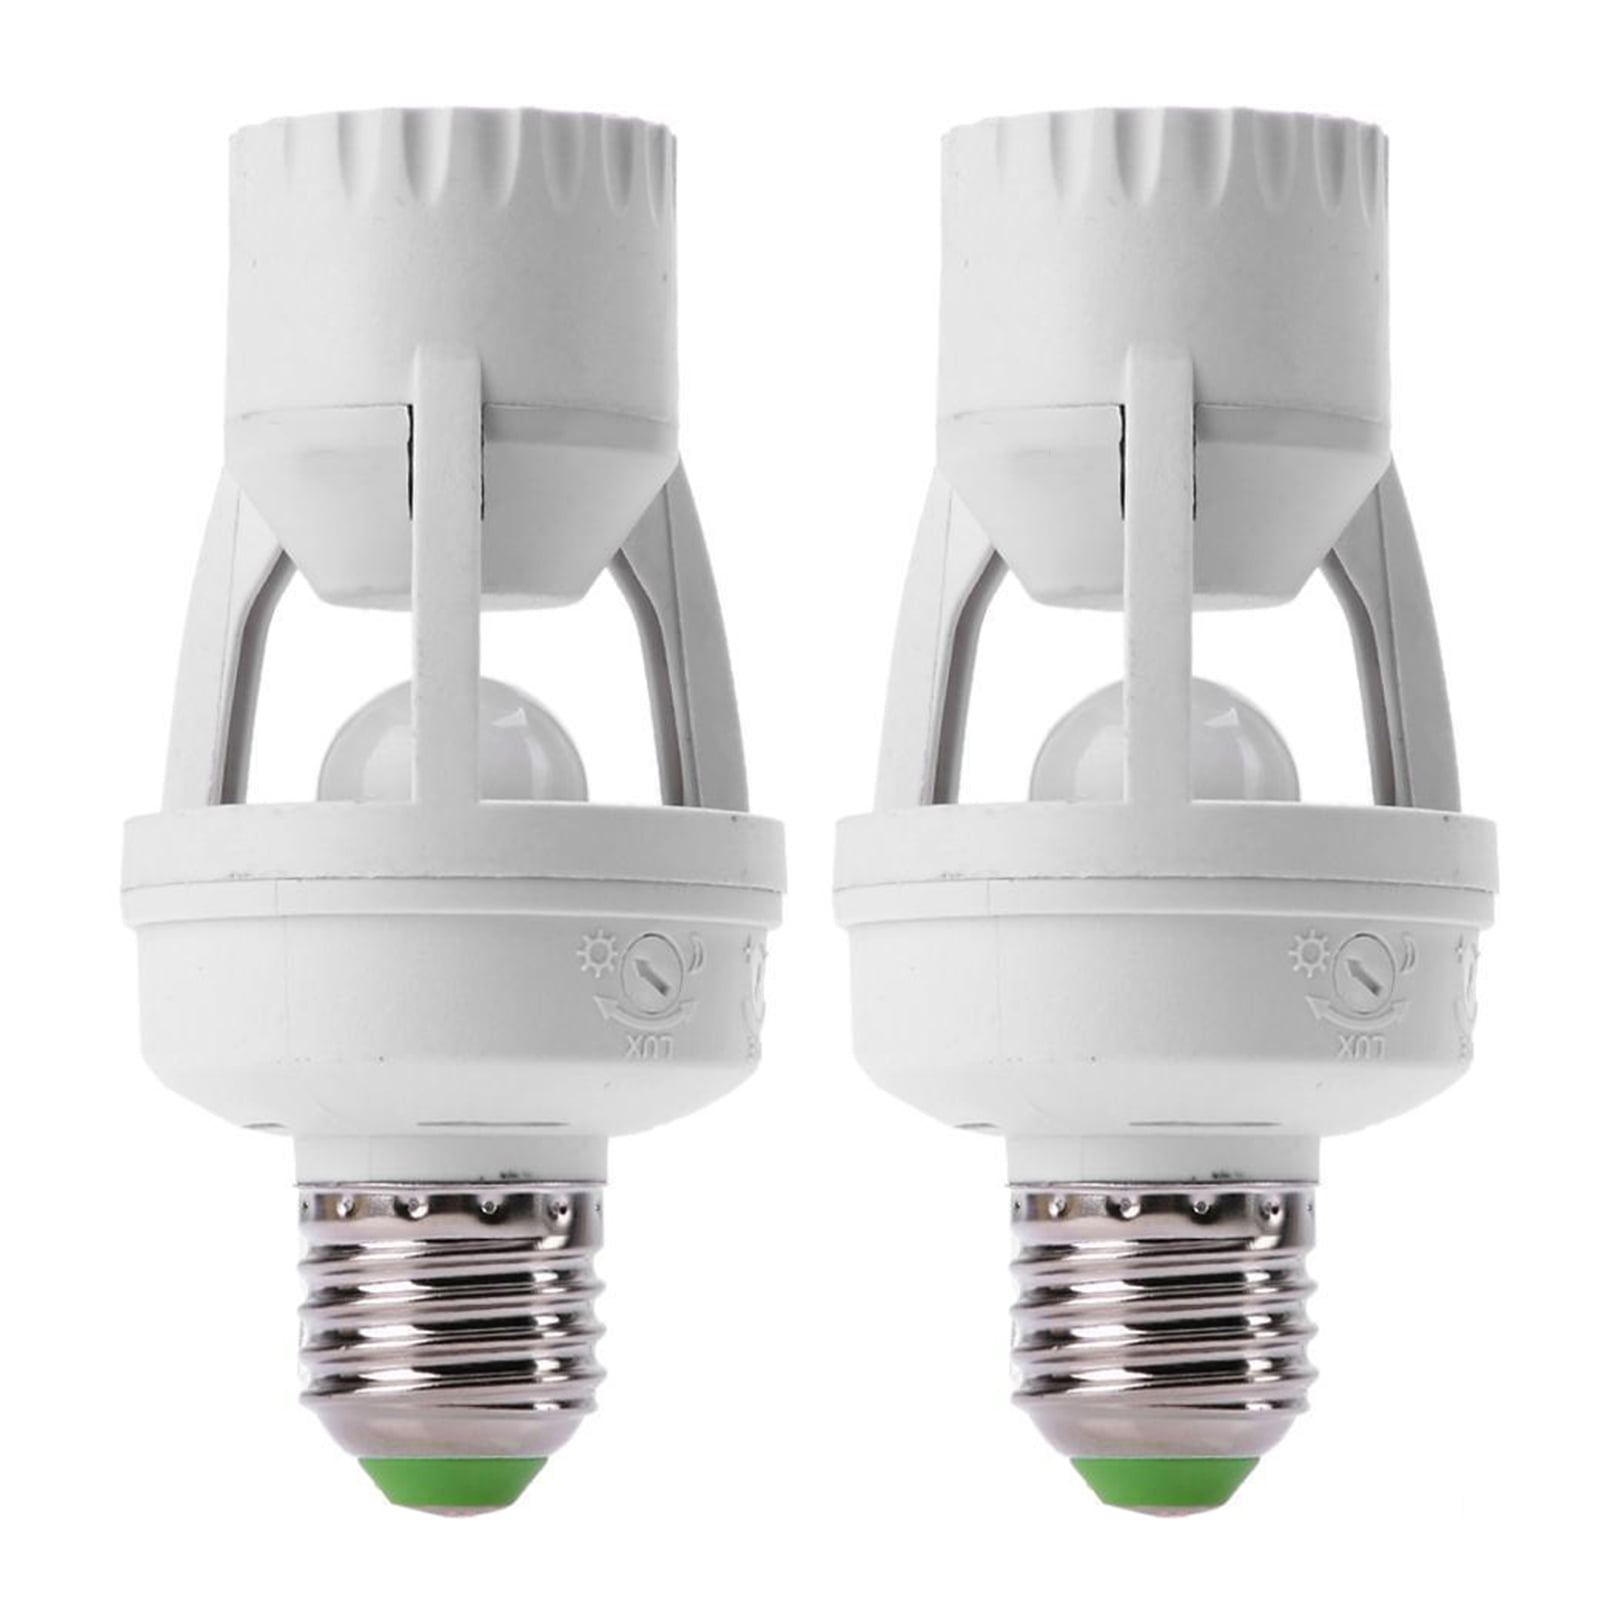 E26 E27 A60 Light Bulb with PIR Motion Sensor 2-Pack RAYHOO 12W Motion Sensor LED Light Bulbs,1000 Lumens for Front Door Garage Basement Hallway Stairs 3000K Warm White 